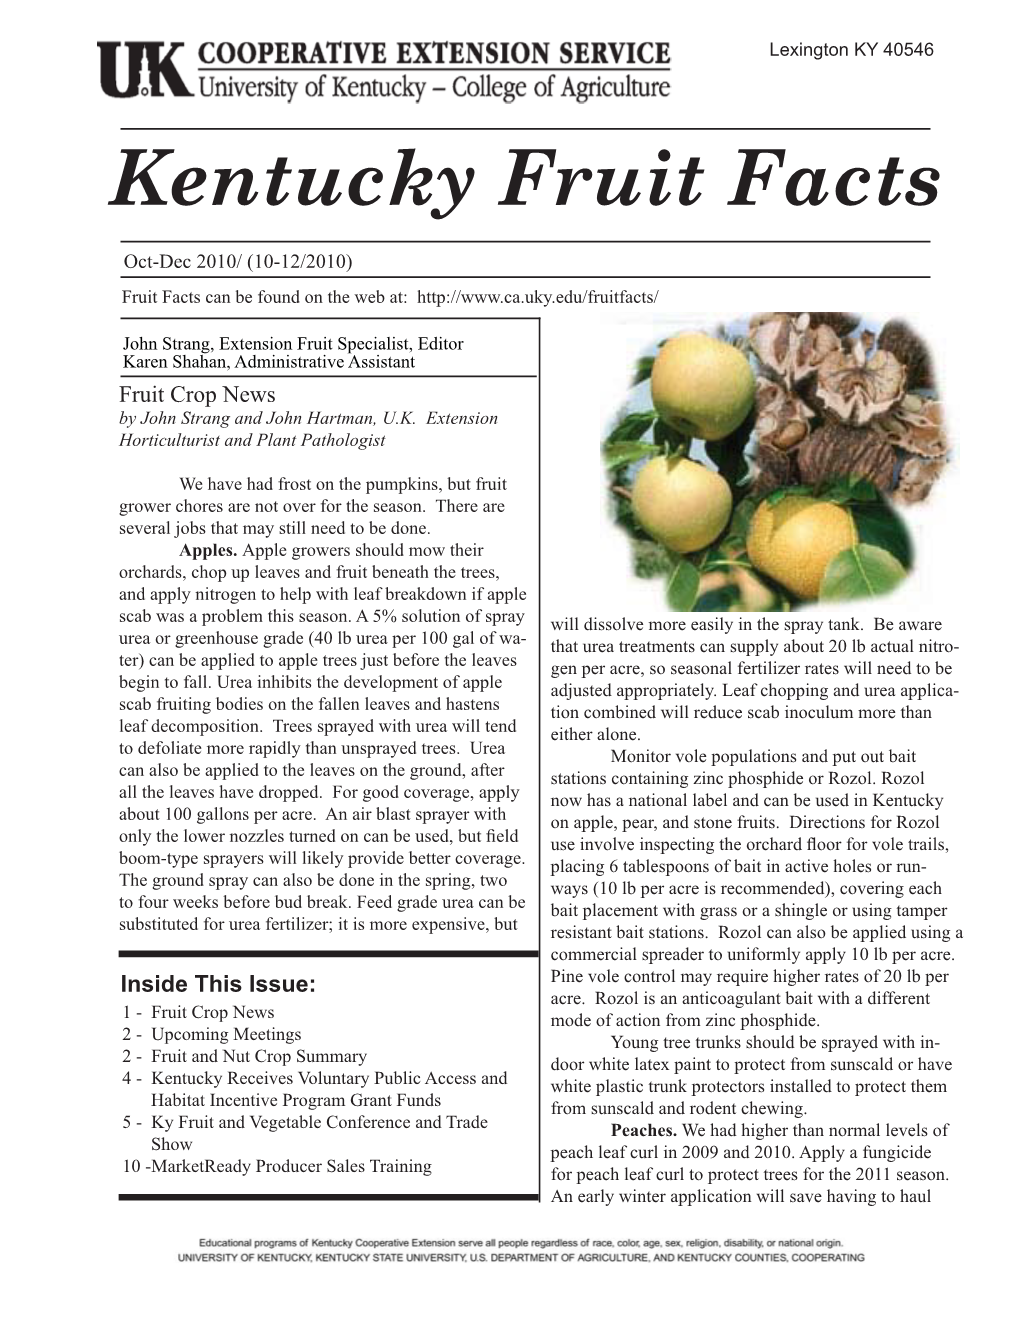 Kentucky Fruit Facts